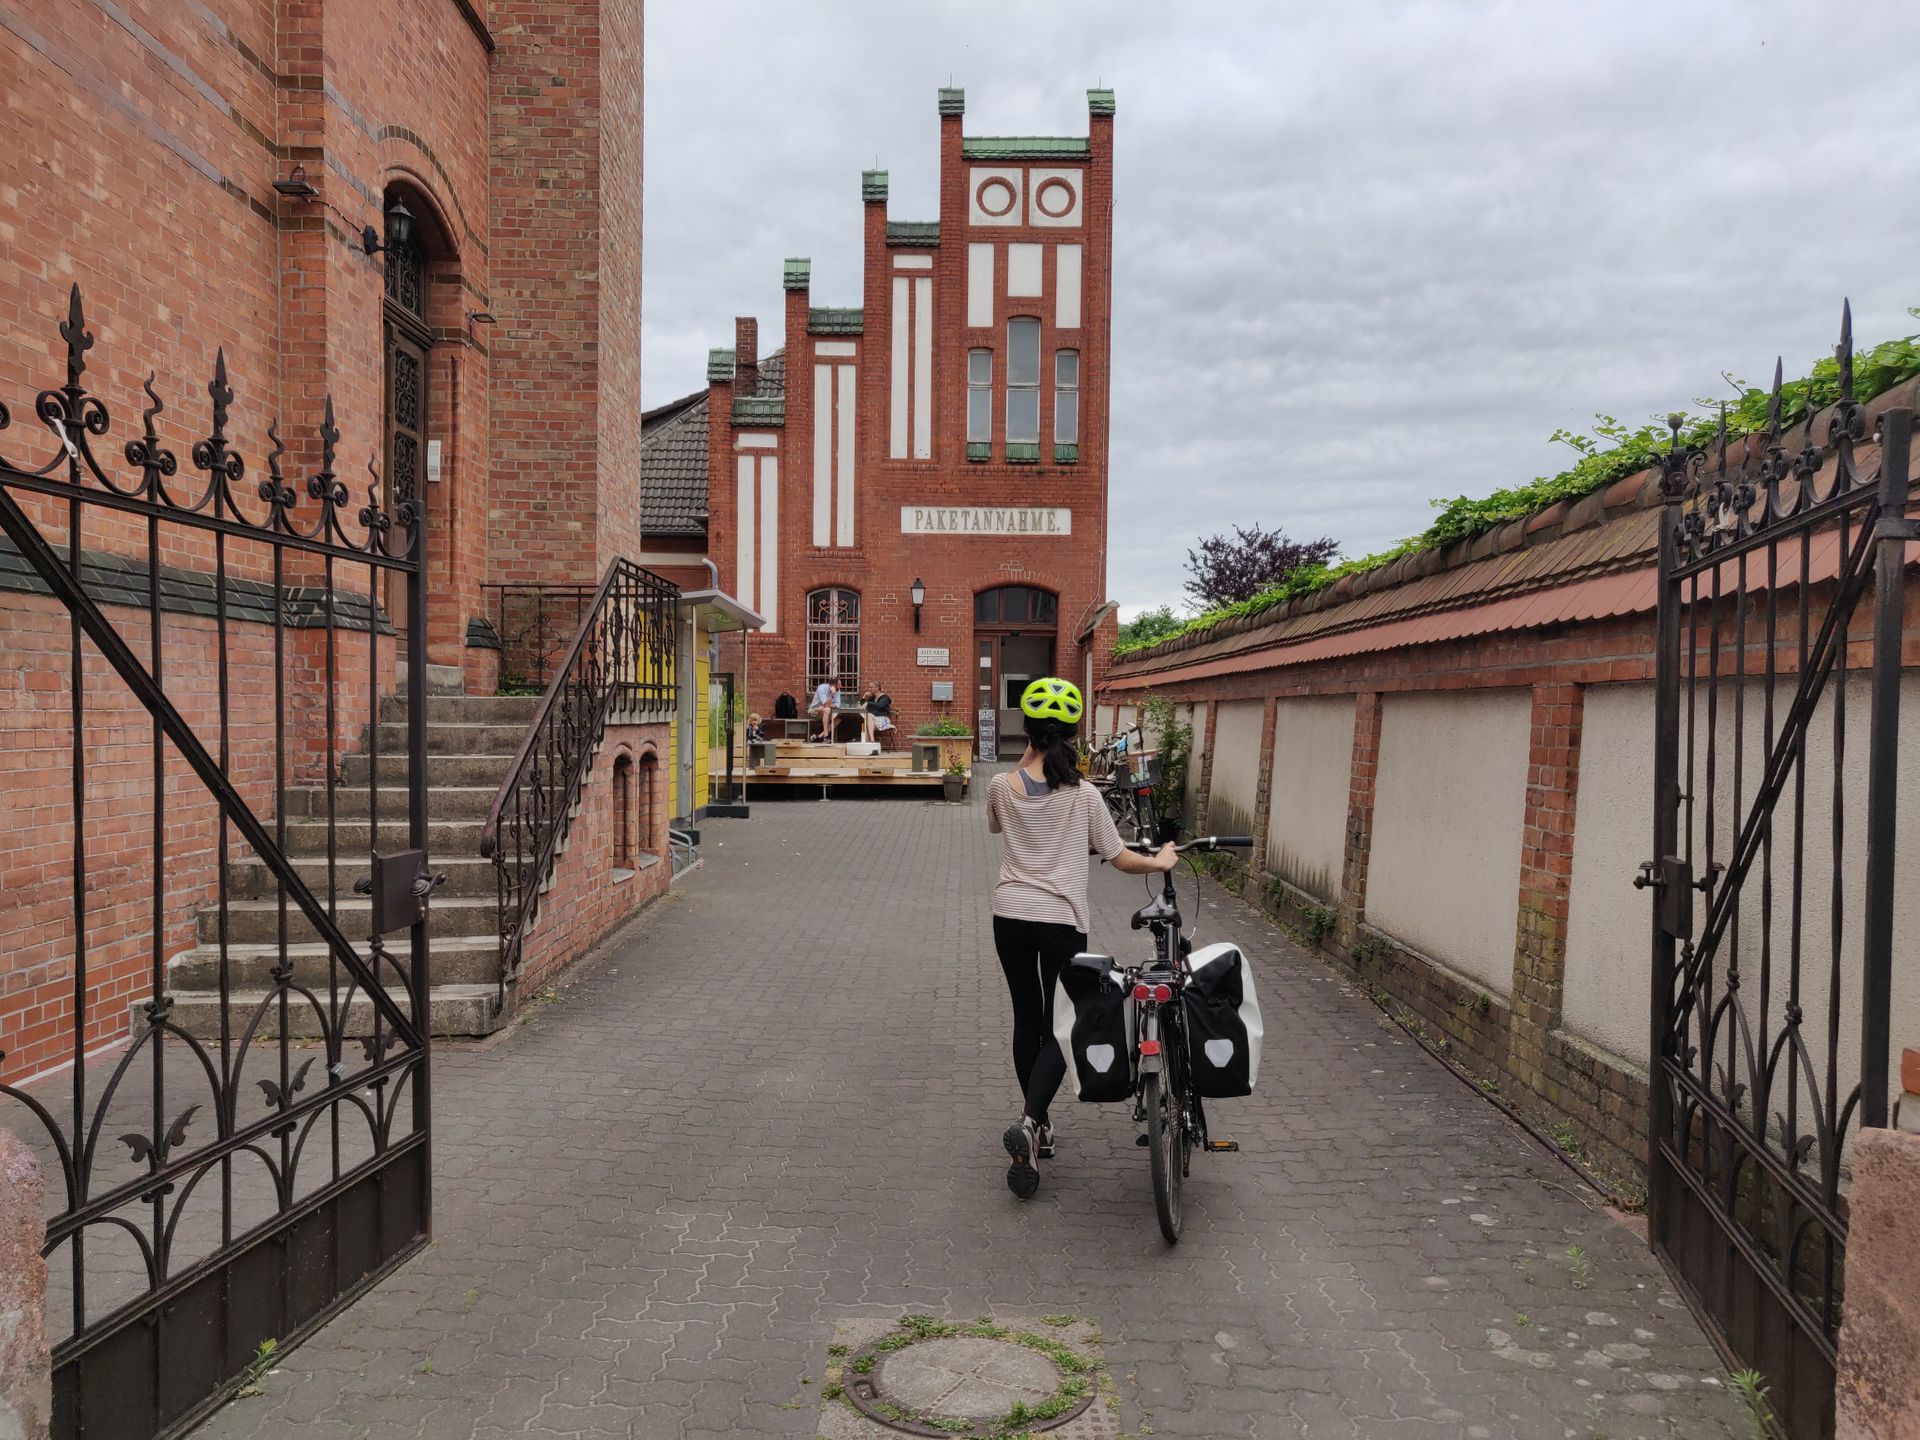 Clara arrive avec son vélo chargé de sacoches devant un café dans la vieille poste de Eberswalde